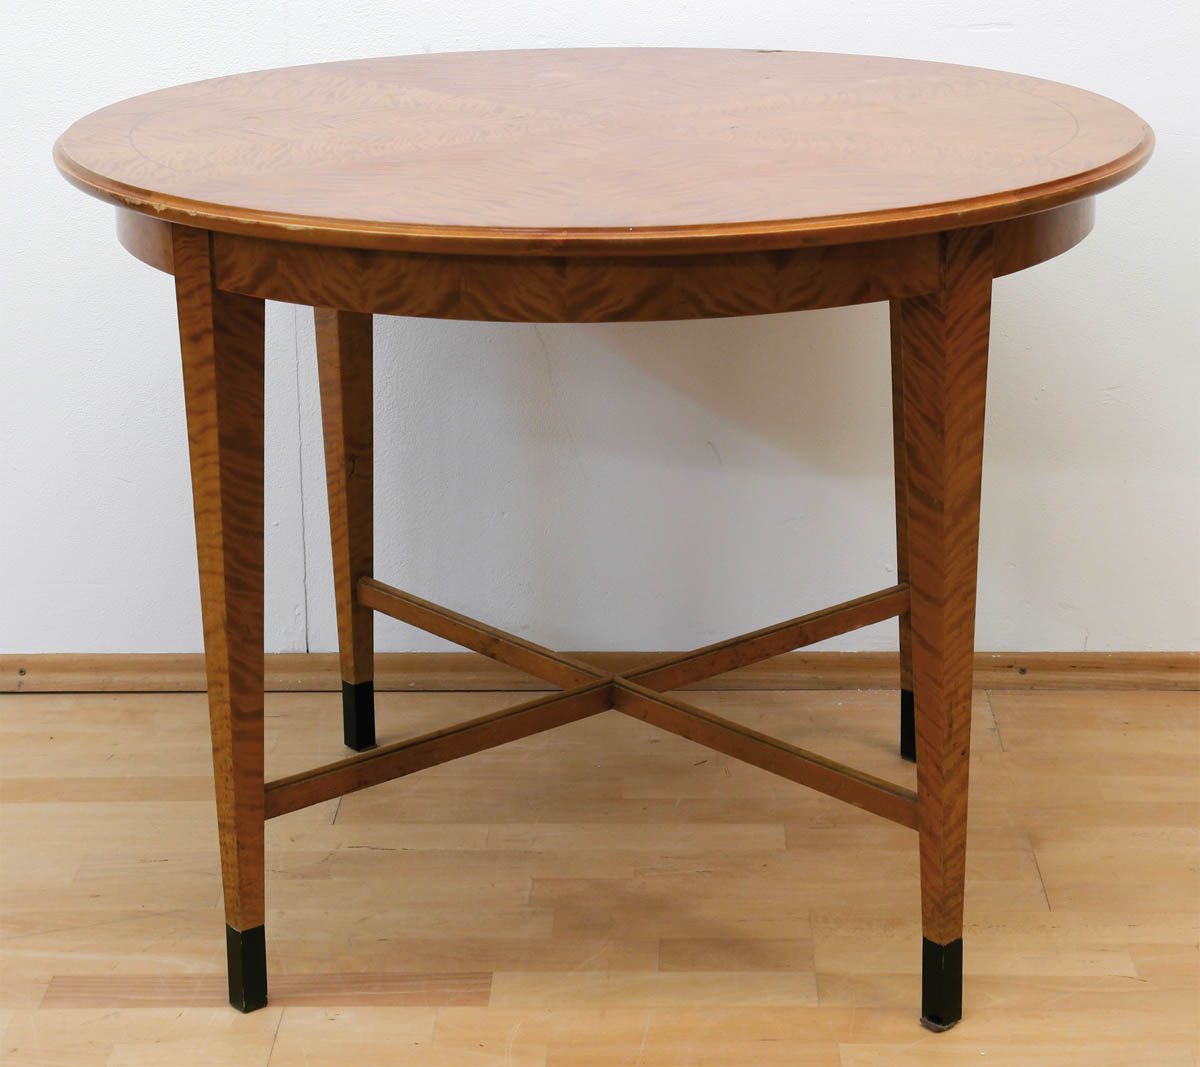 Tisch im Biedermeierstil, um 1900, Birke furniert, rund, H. 75 cm, Dm. 100 cm